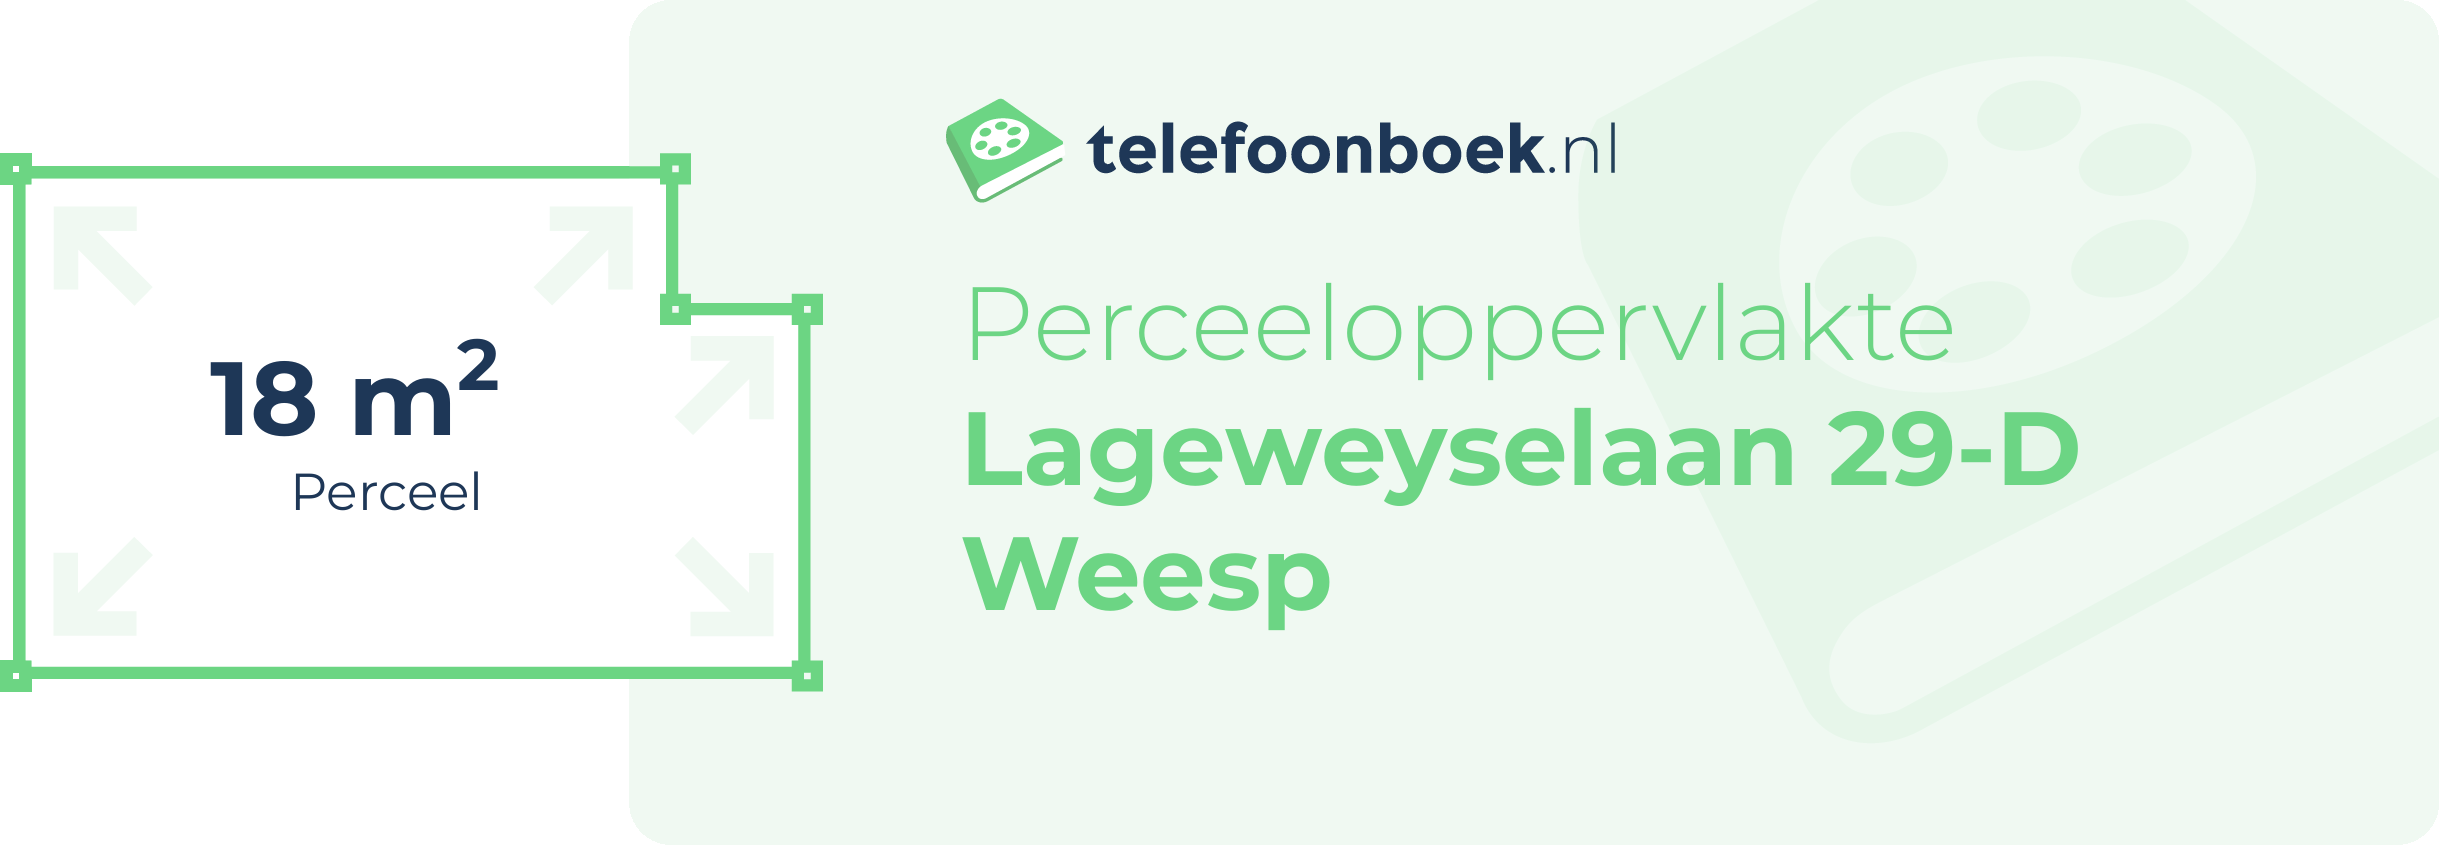 Perceeloppervlakte Lageweyselaan 29-D Weesp